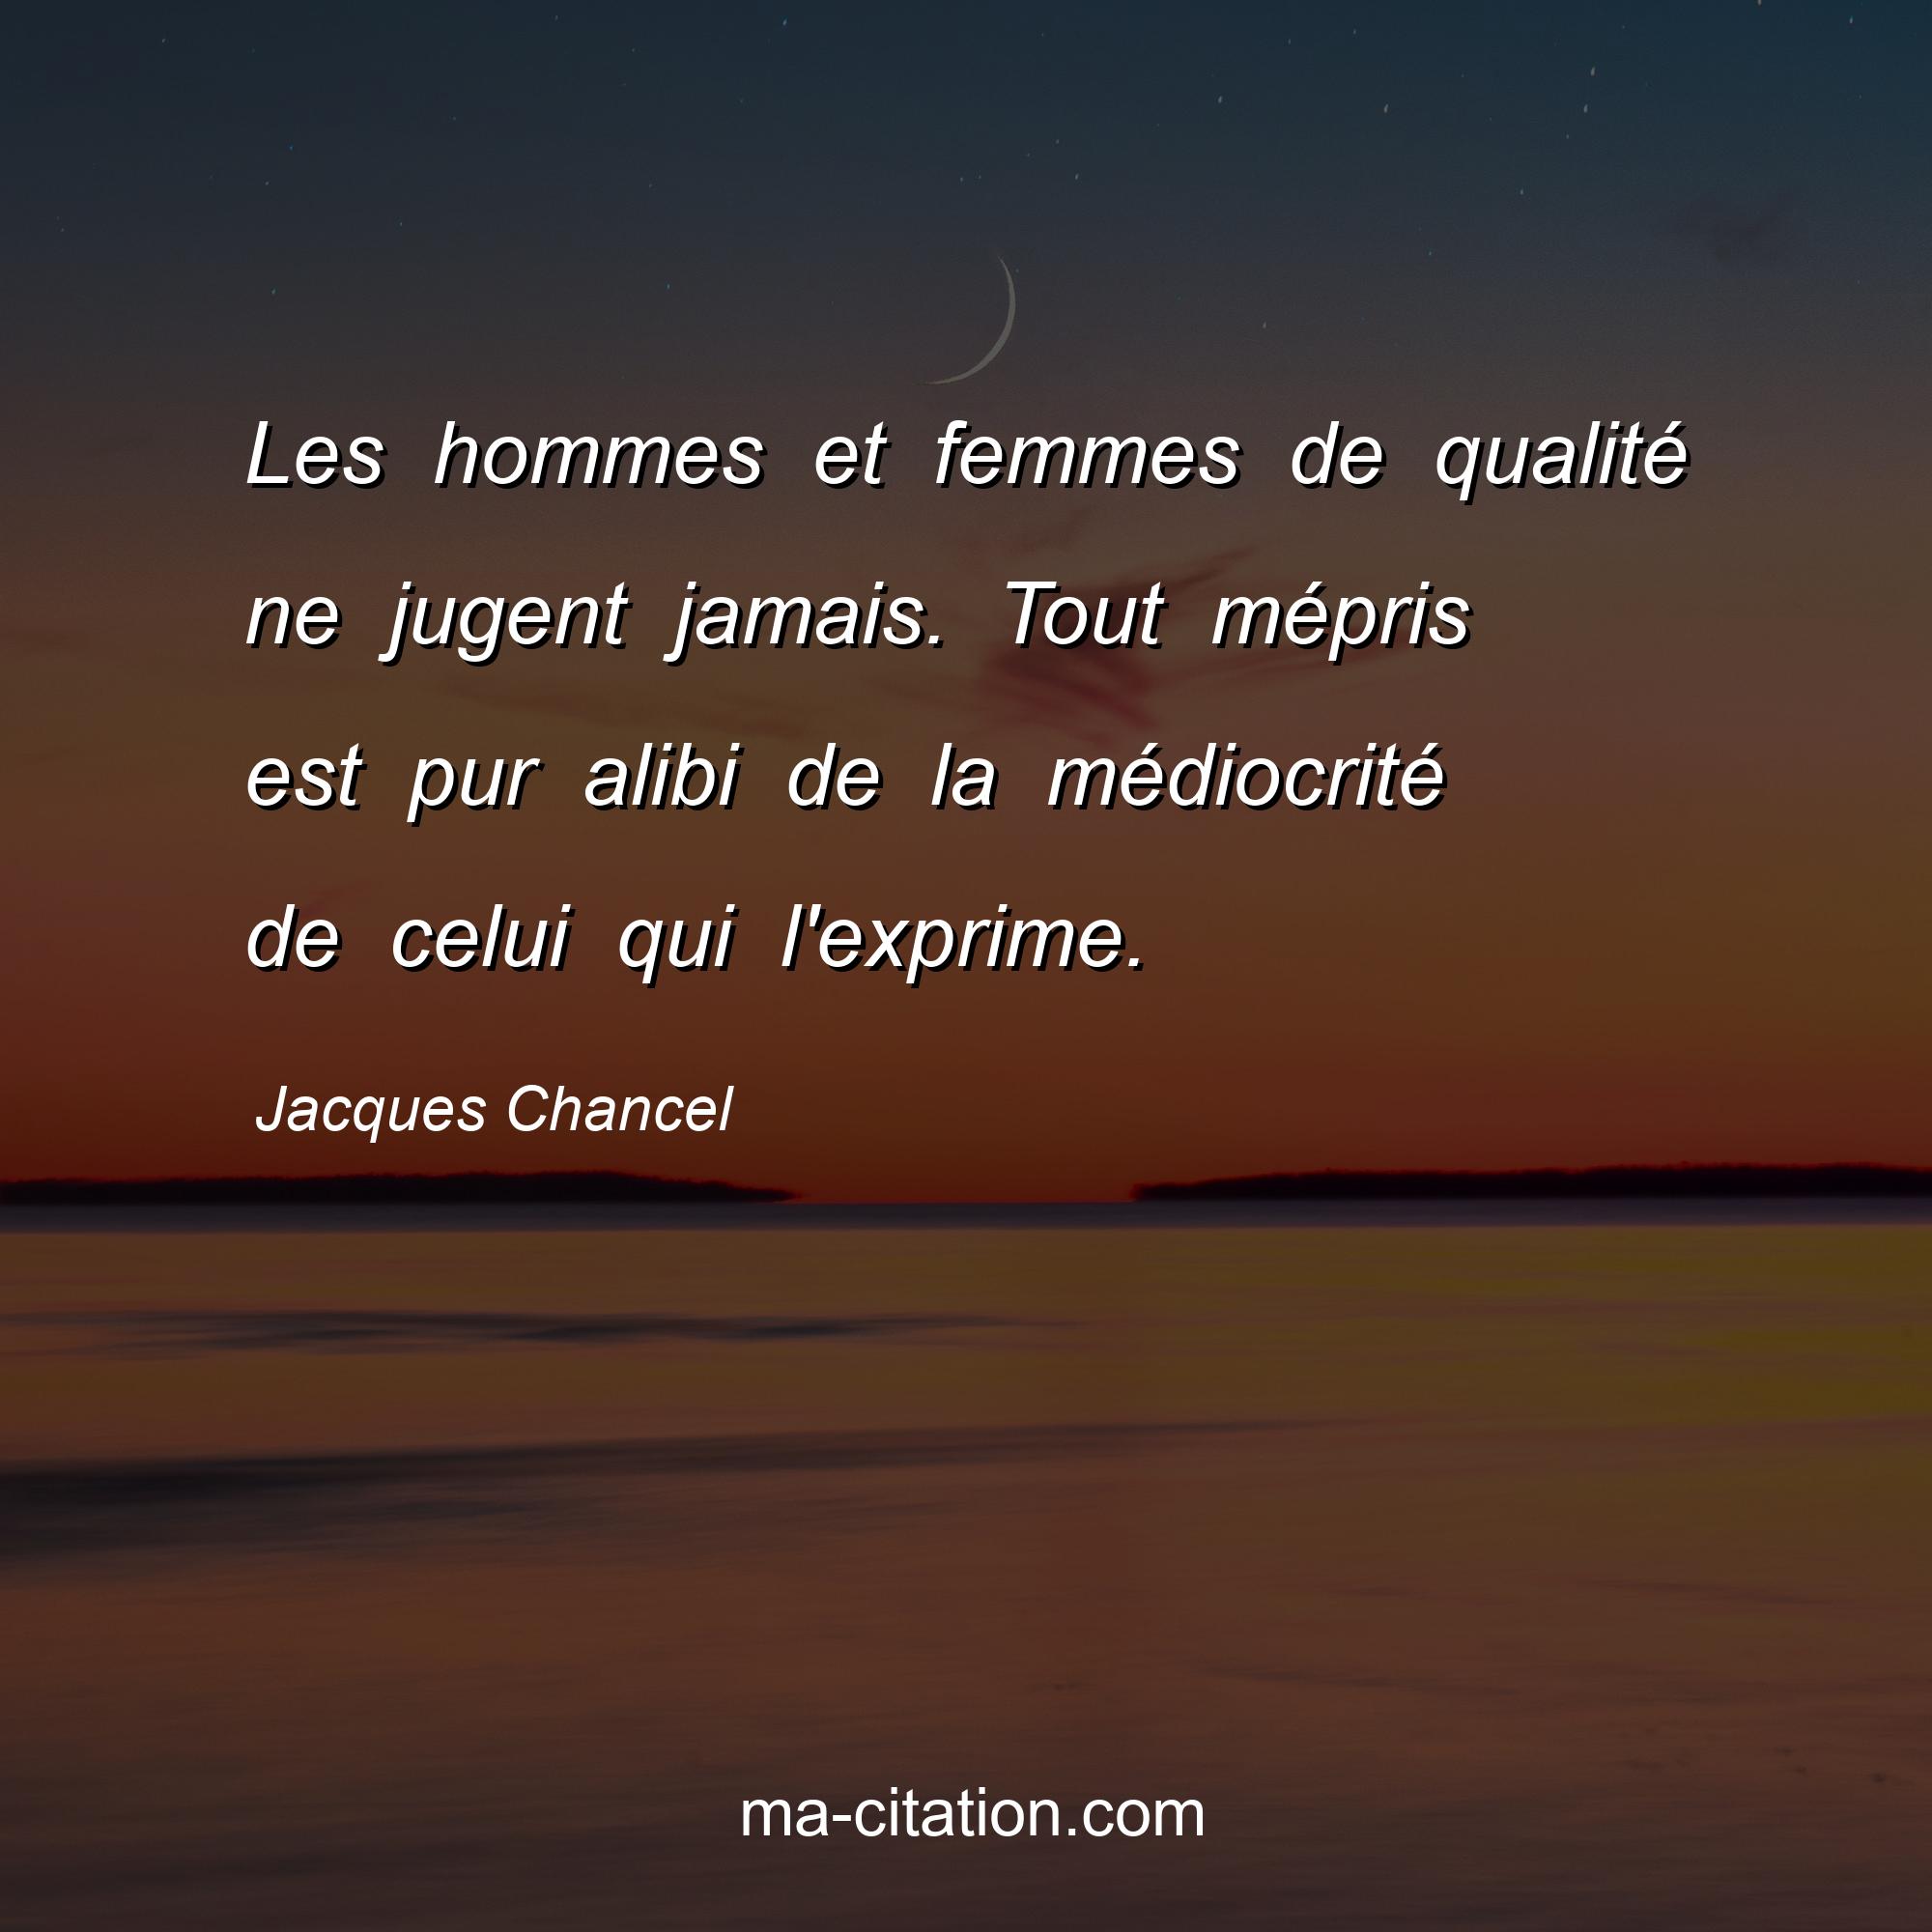 Jacques Chancel : Les hommes et femmes de qualité ne jugent jamais. Tout mépris est pur alibi de la médiocrité de celui qui l'exprime.